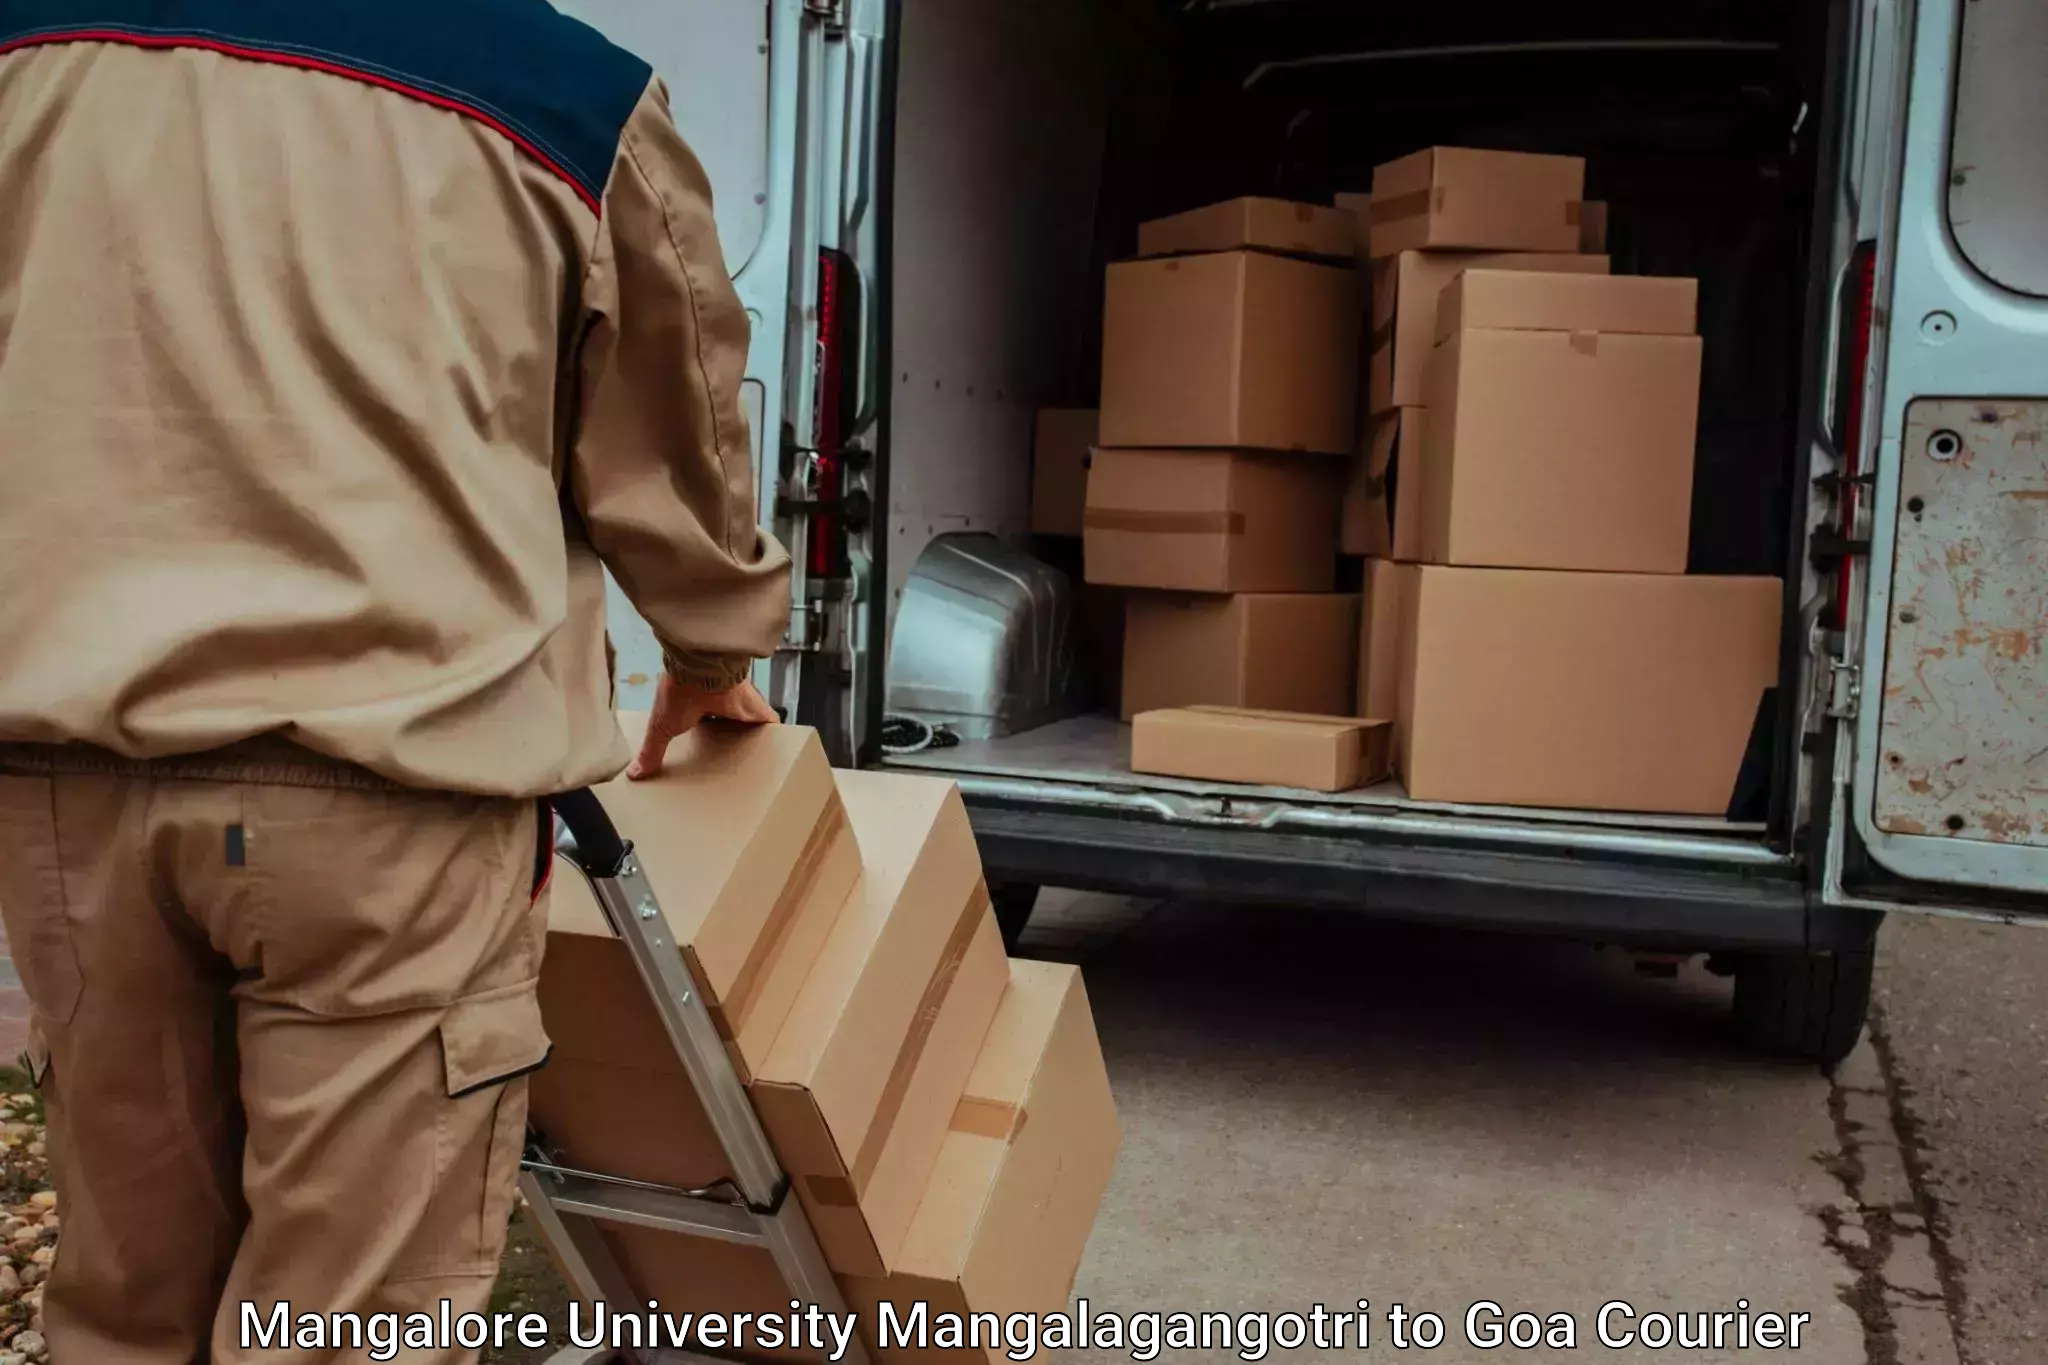 Professional goods transport Mangalore University Mangalagangotri to Goa